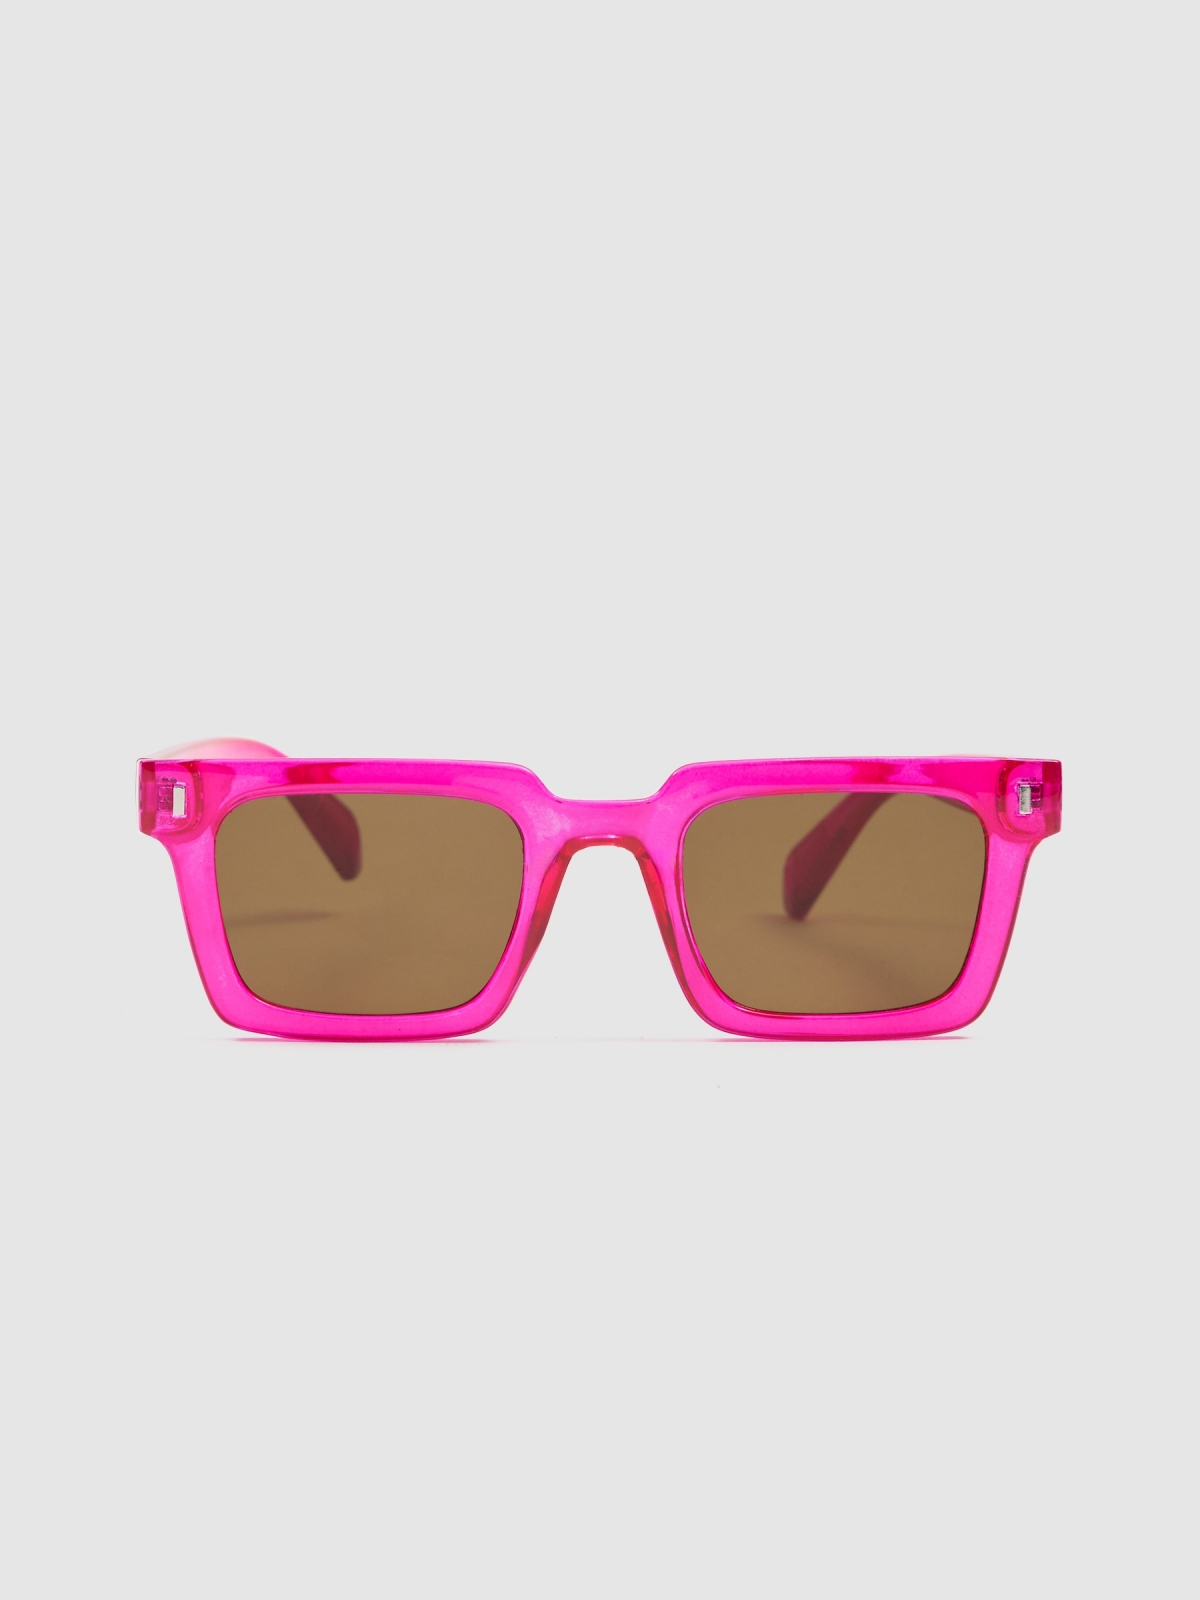 Square acetate sunglasses pink